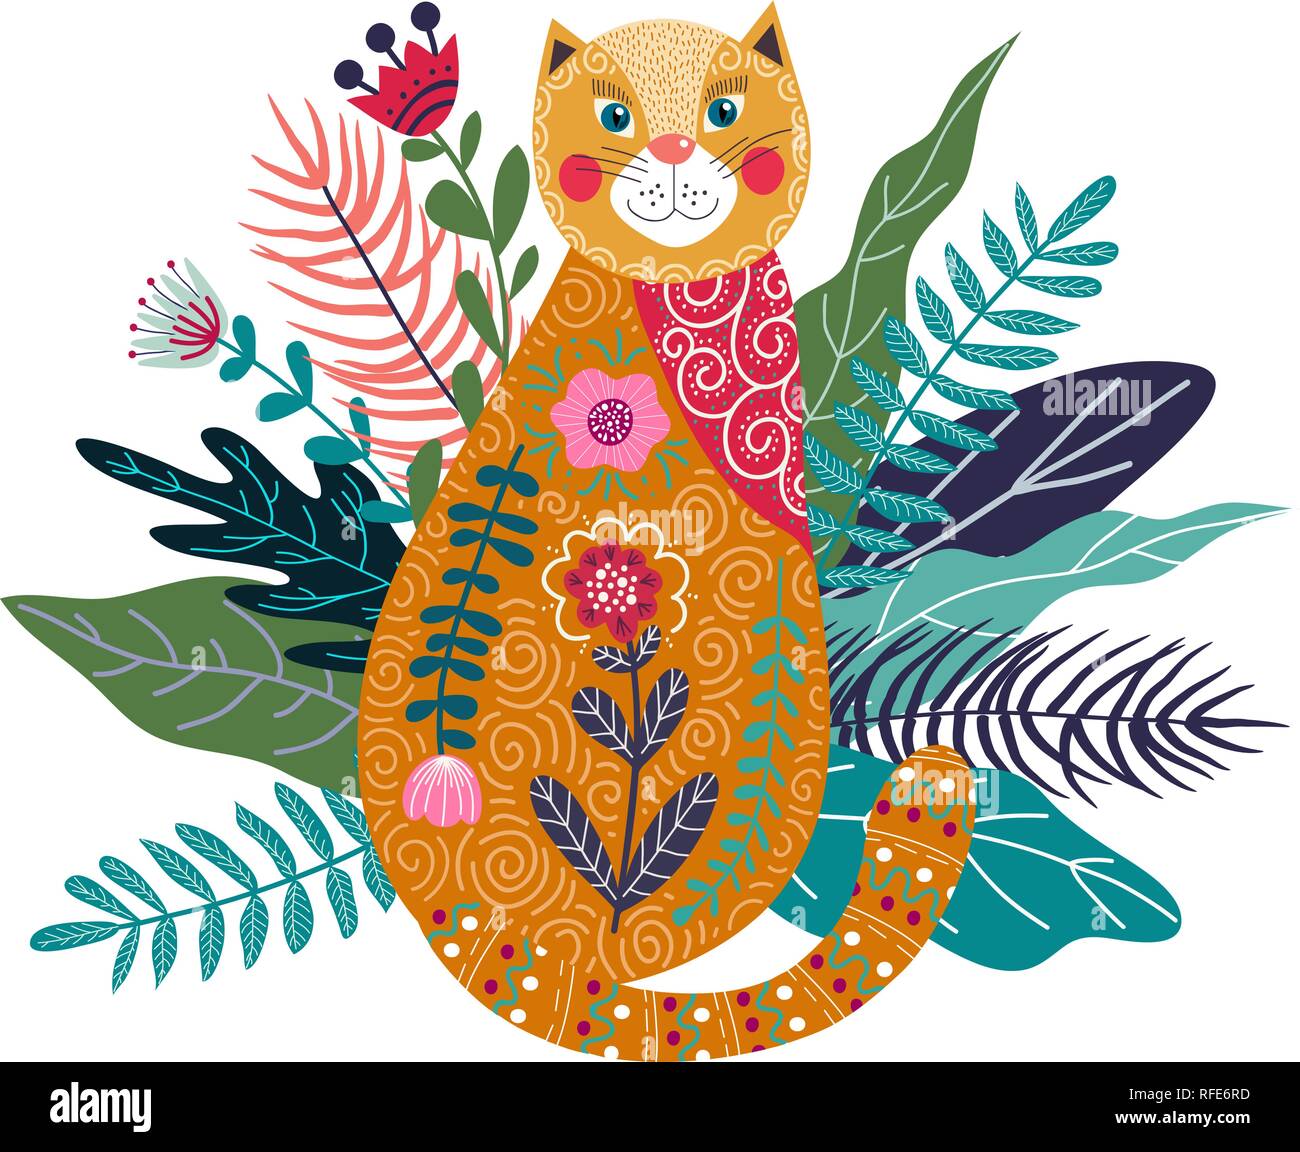 Vettore d'arte colorata illustrazione isolato con zenzero cute cat, fiori ed erba. Illustrazioni per la decorazione di interni e per l'uso in fase di progettazione Illustrazione Vettoriale